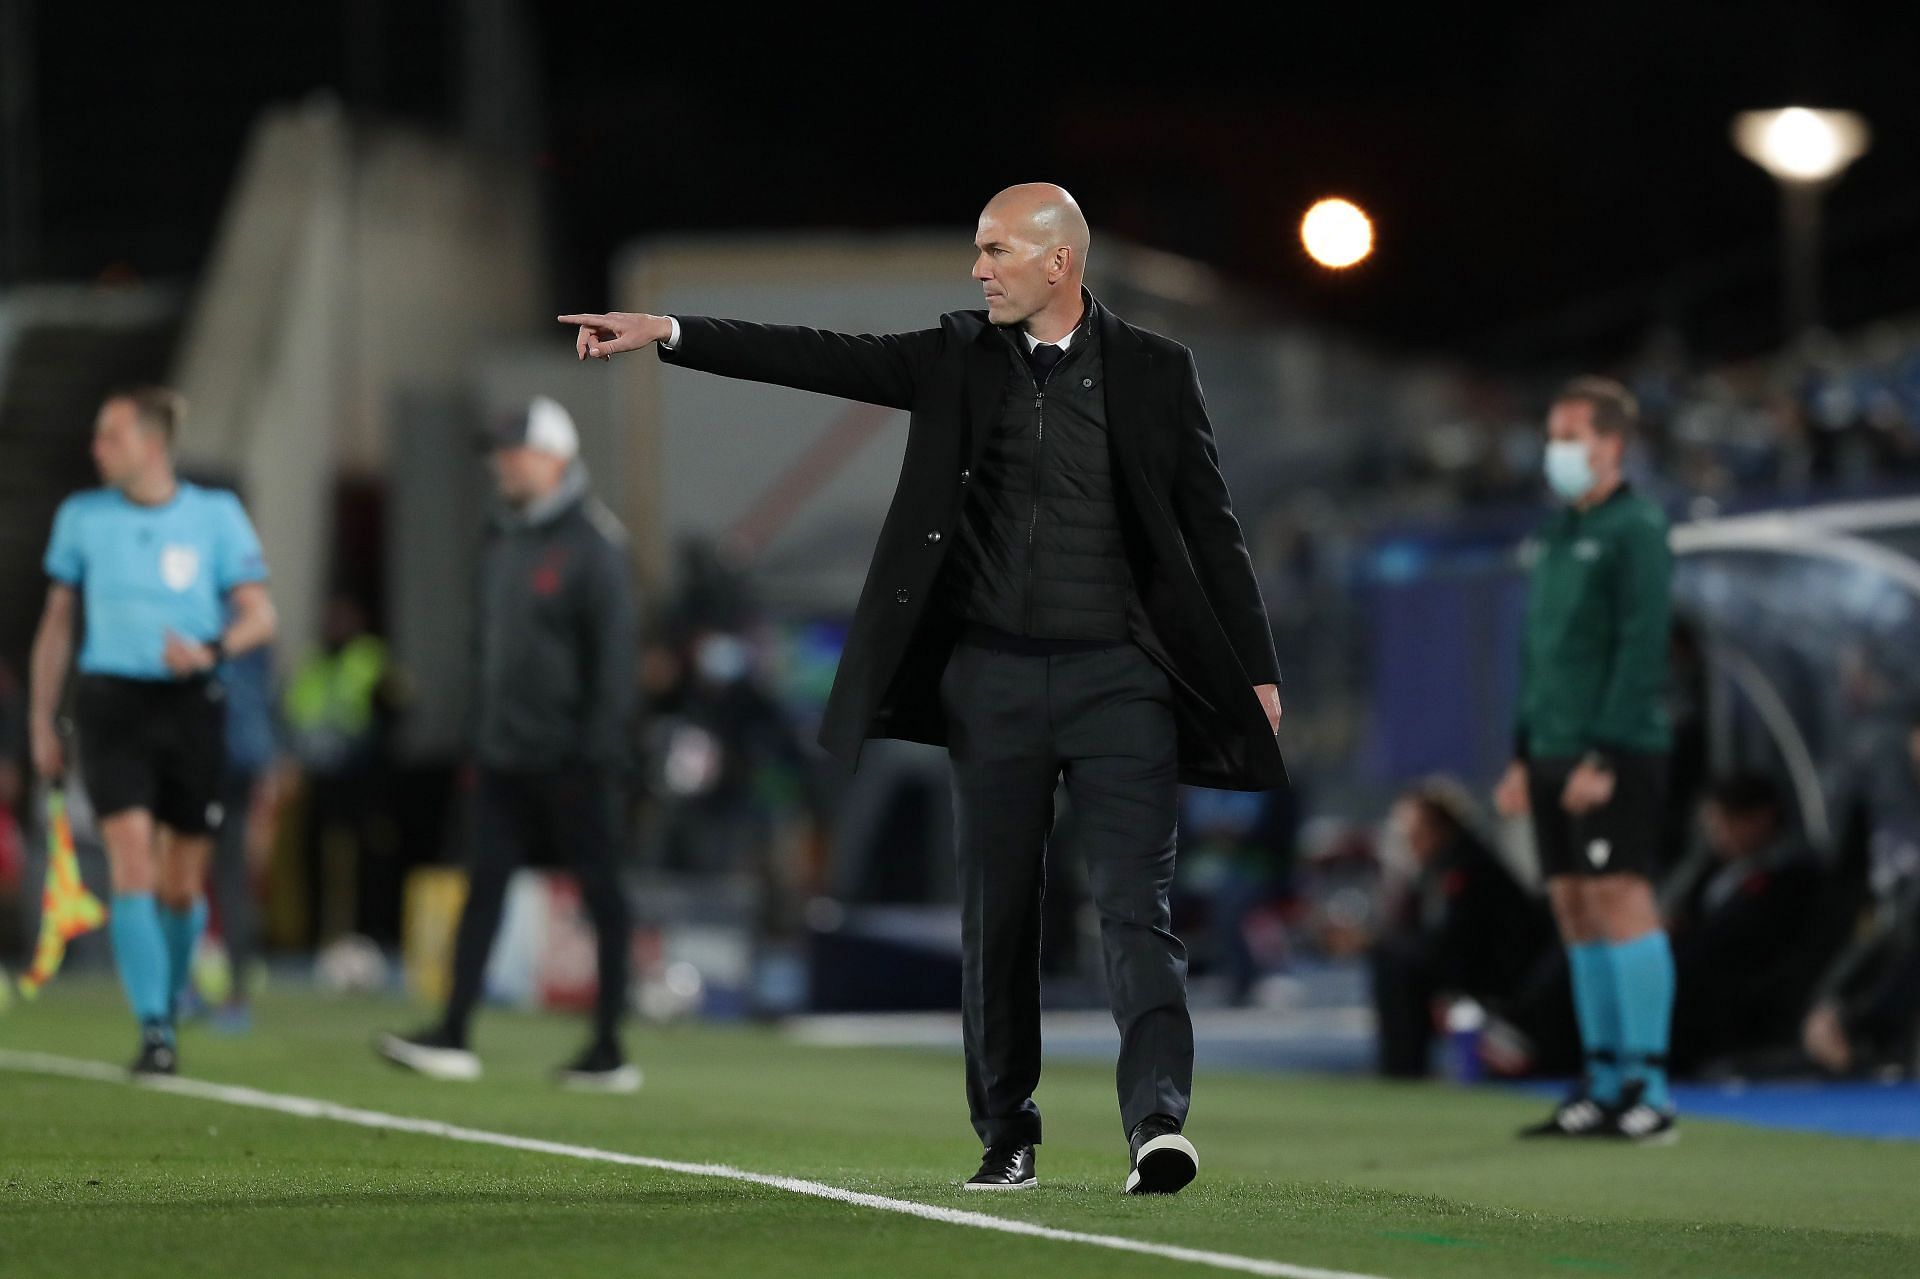 Zidane could make a long-awaited return.